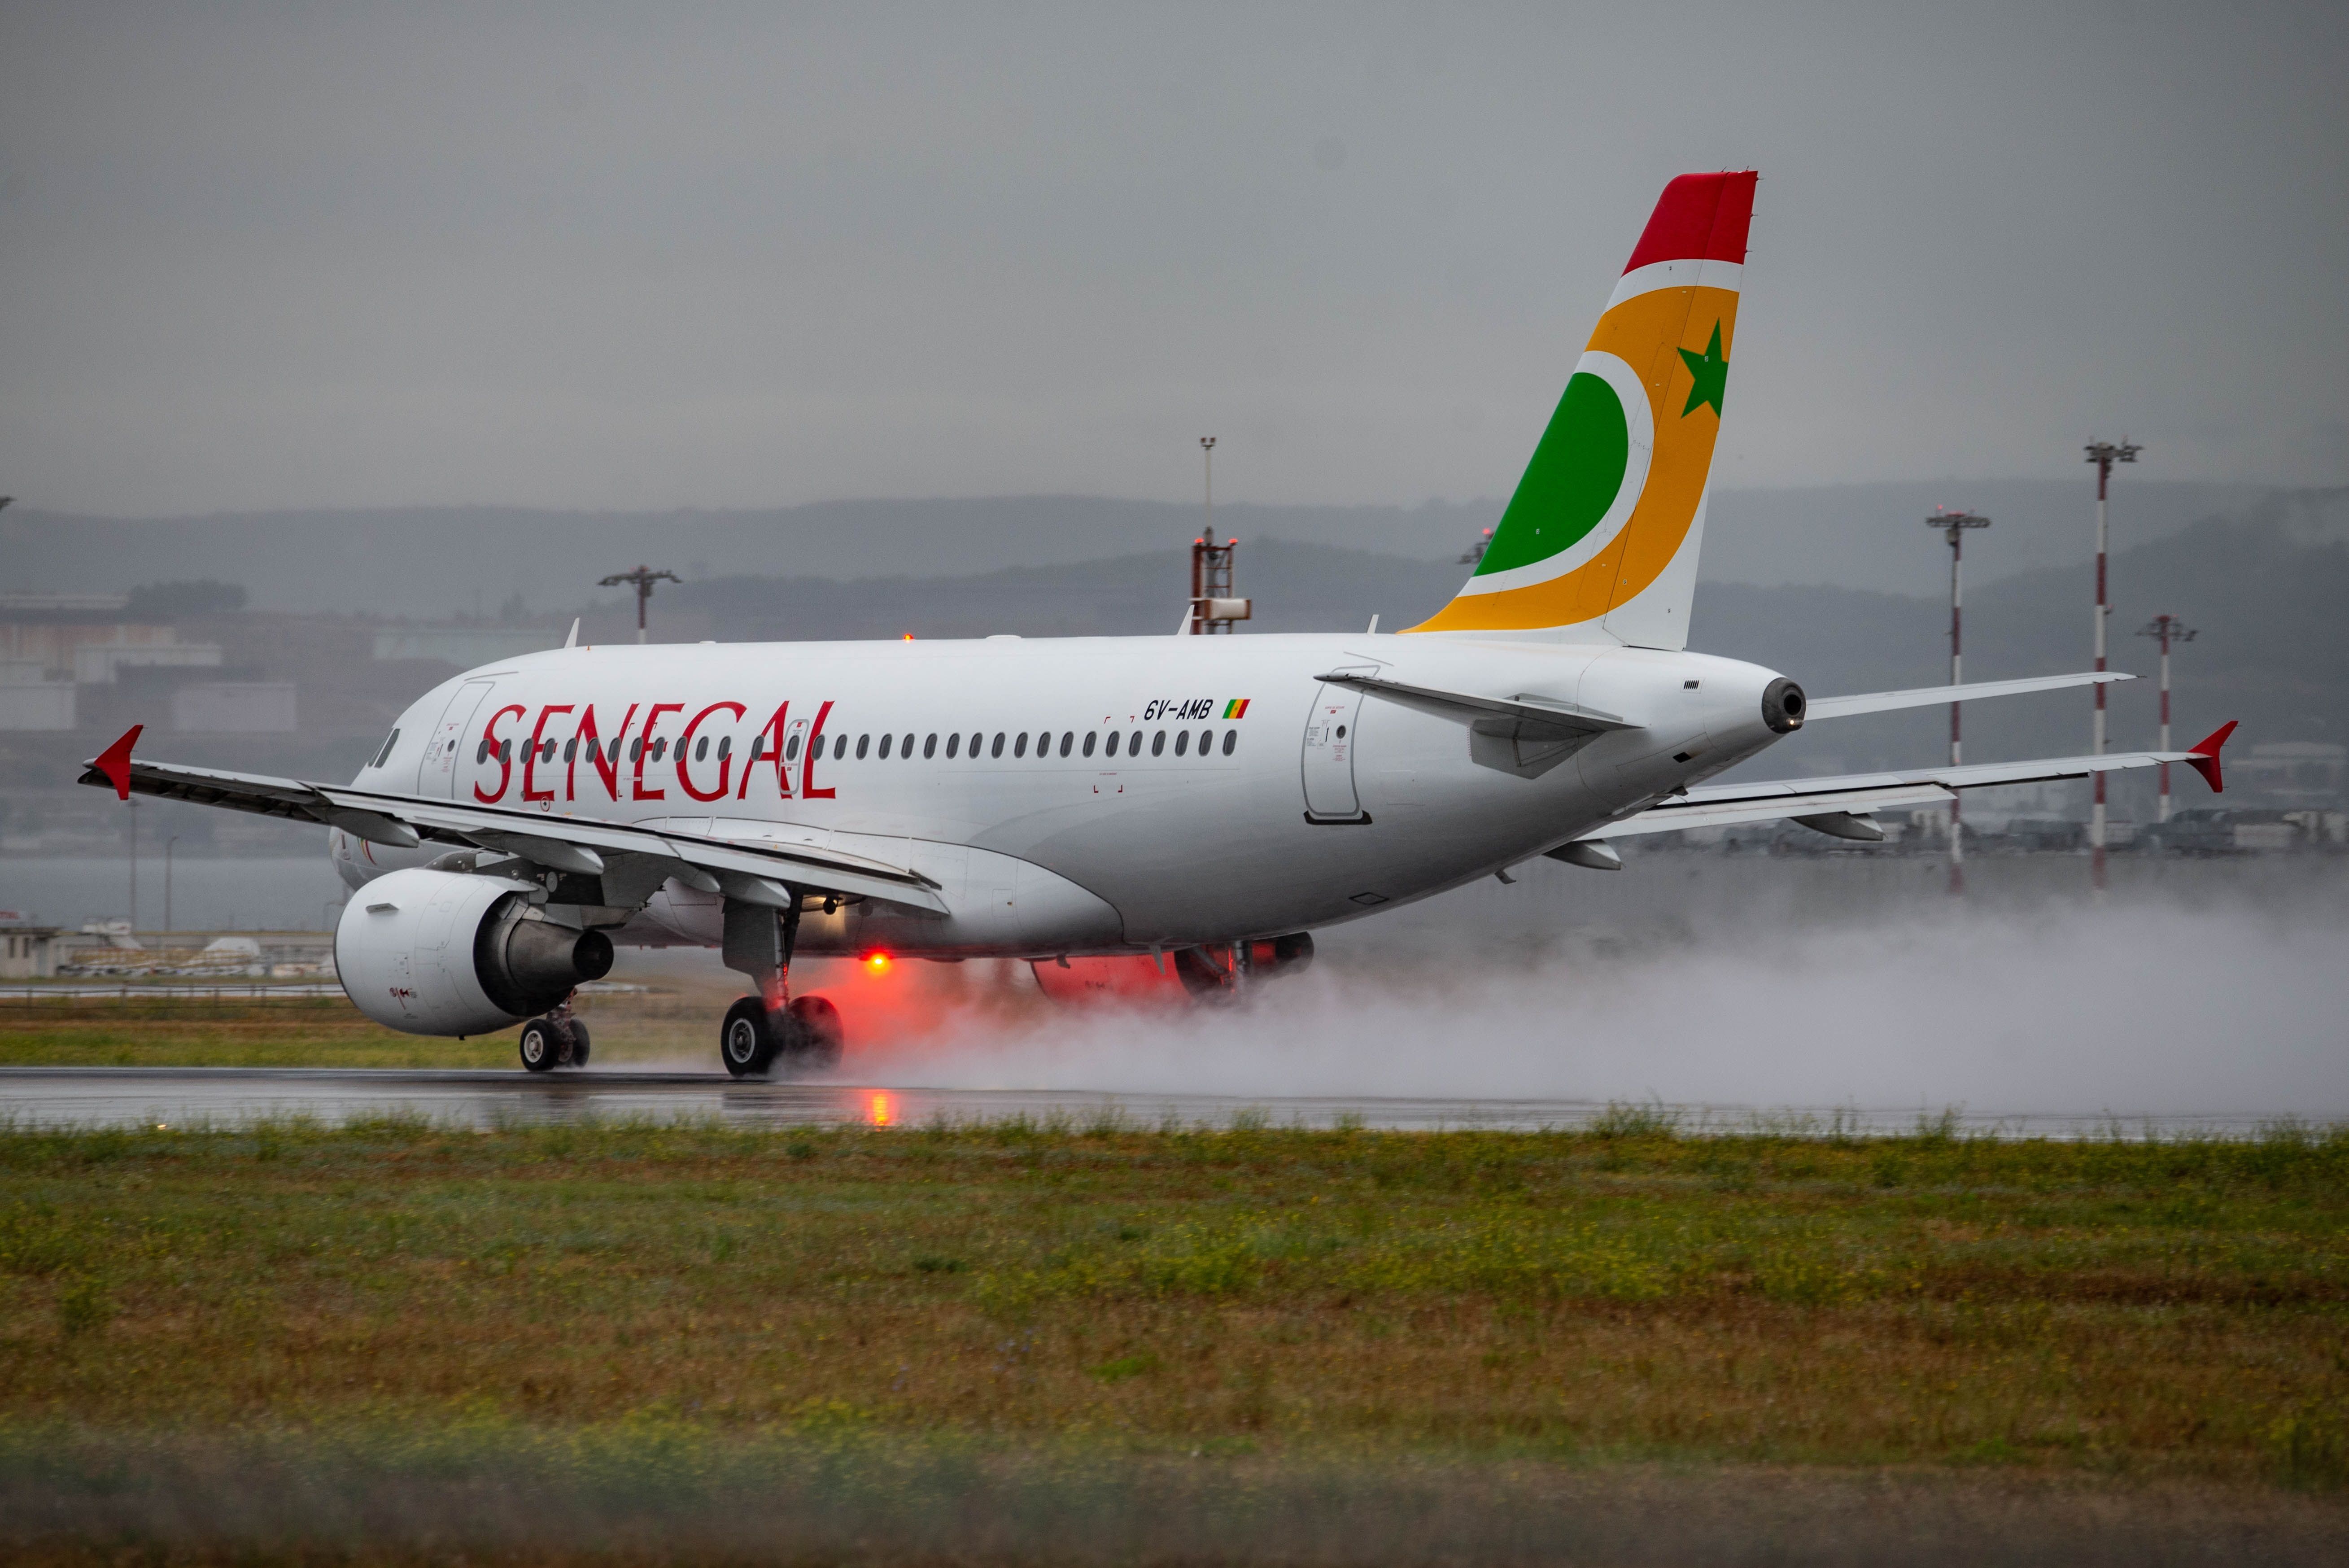 Air Senegal A319